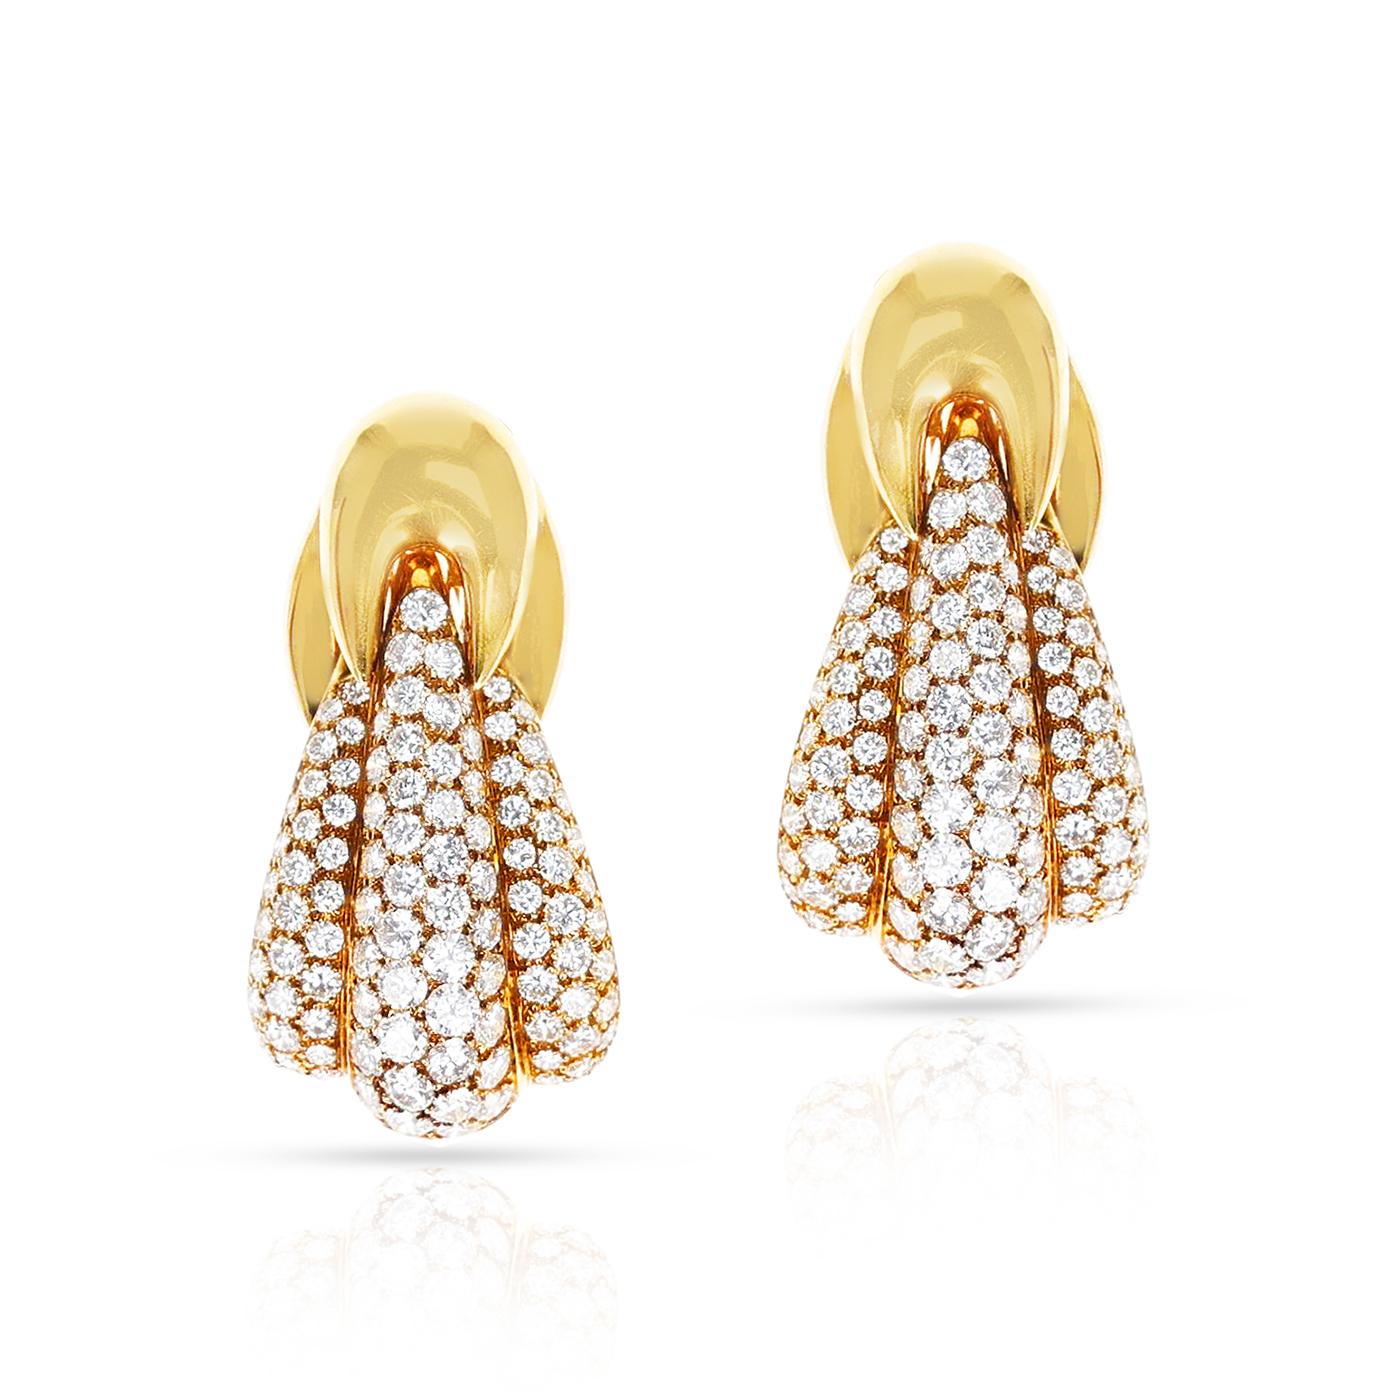 Ein prächtiges Paar Van Cleef & Arpels Large Cocktail Diamond Earrings aus 18 Karat Gelbgold. Länge 1,60 Zoll. Das Gesamtgewicht beträgt 28,79 Gramm. Signiert und nummeriert.